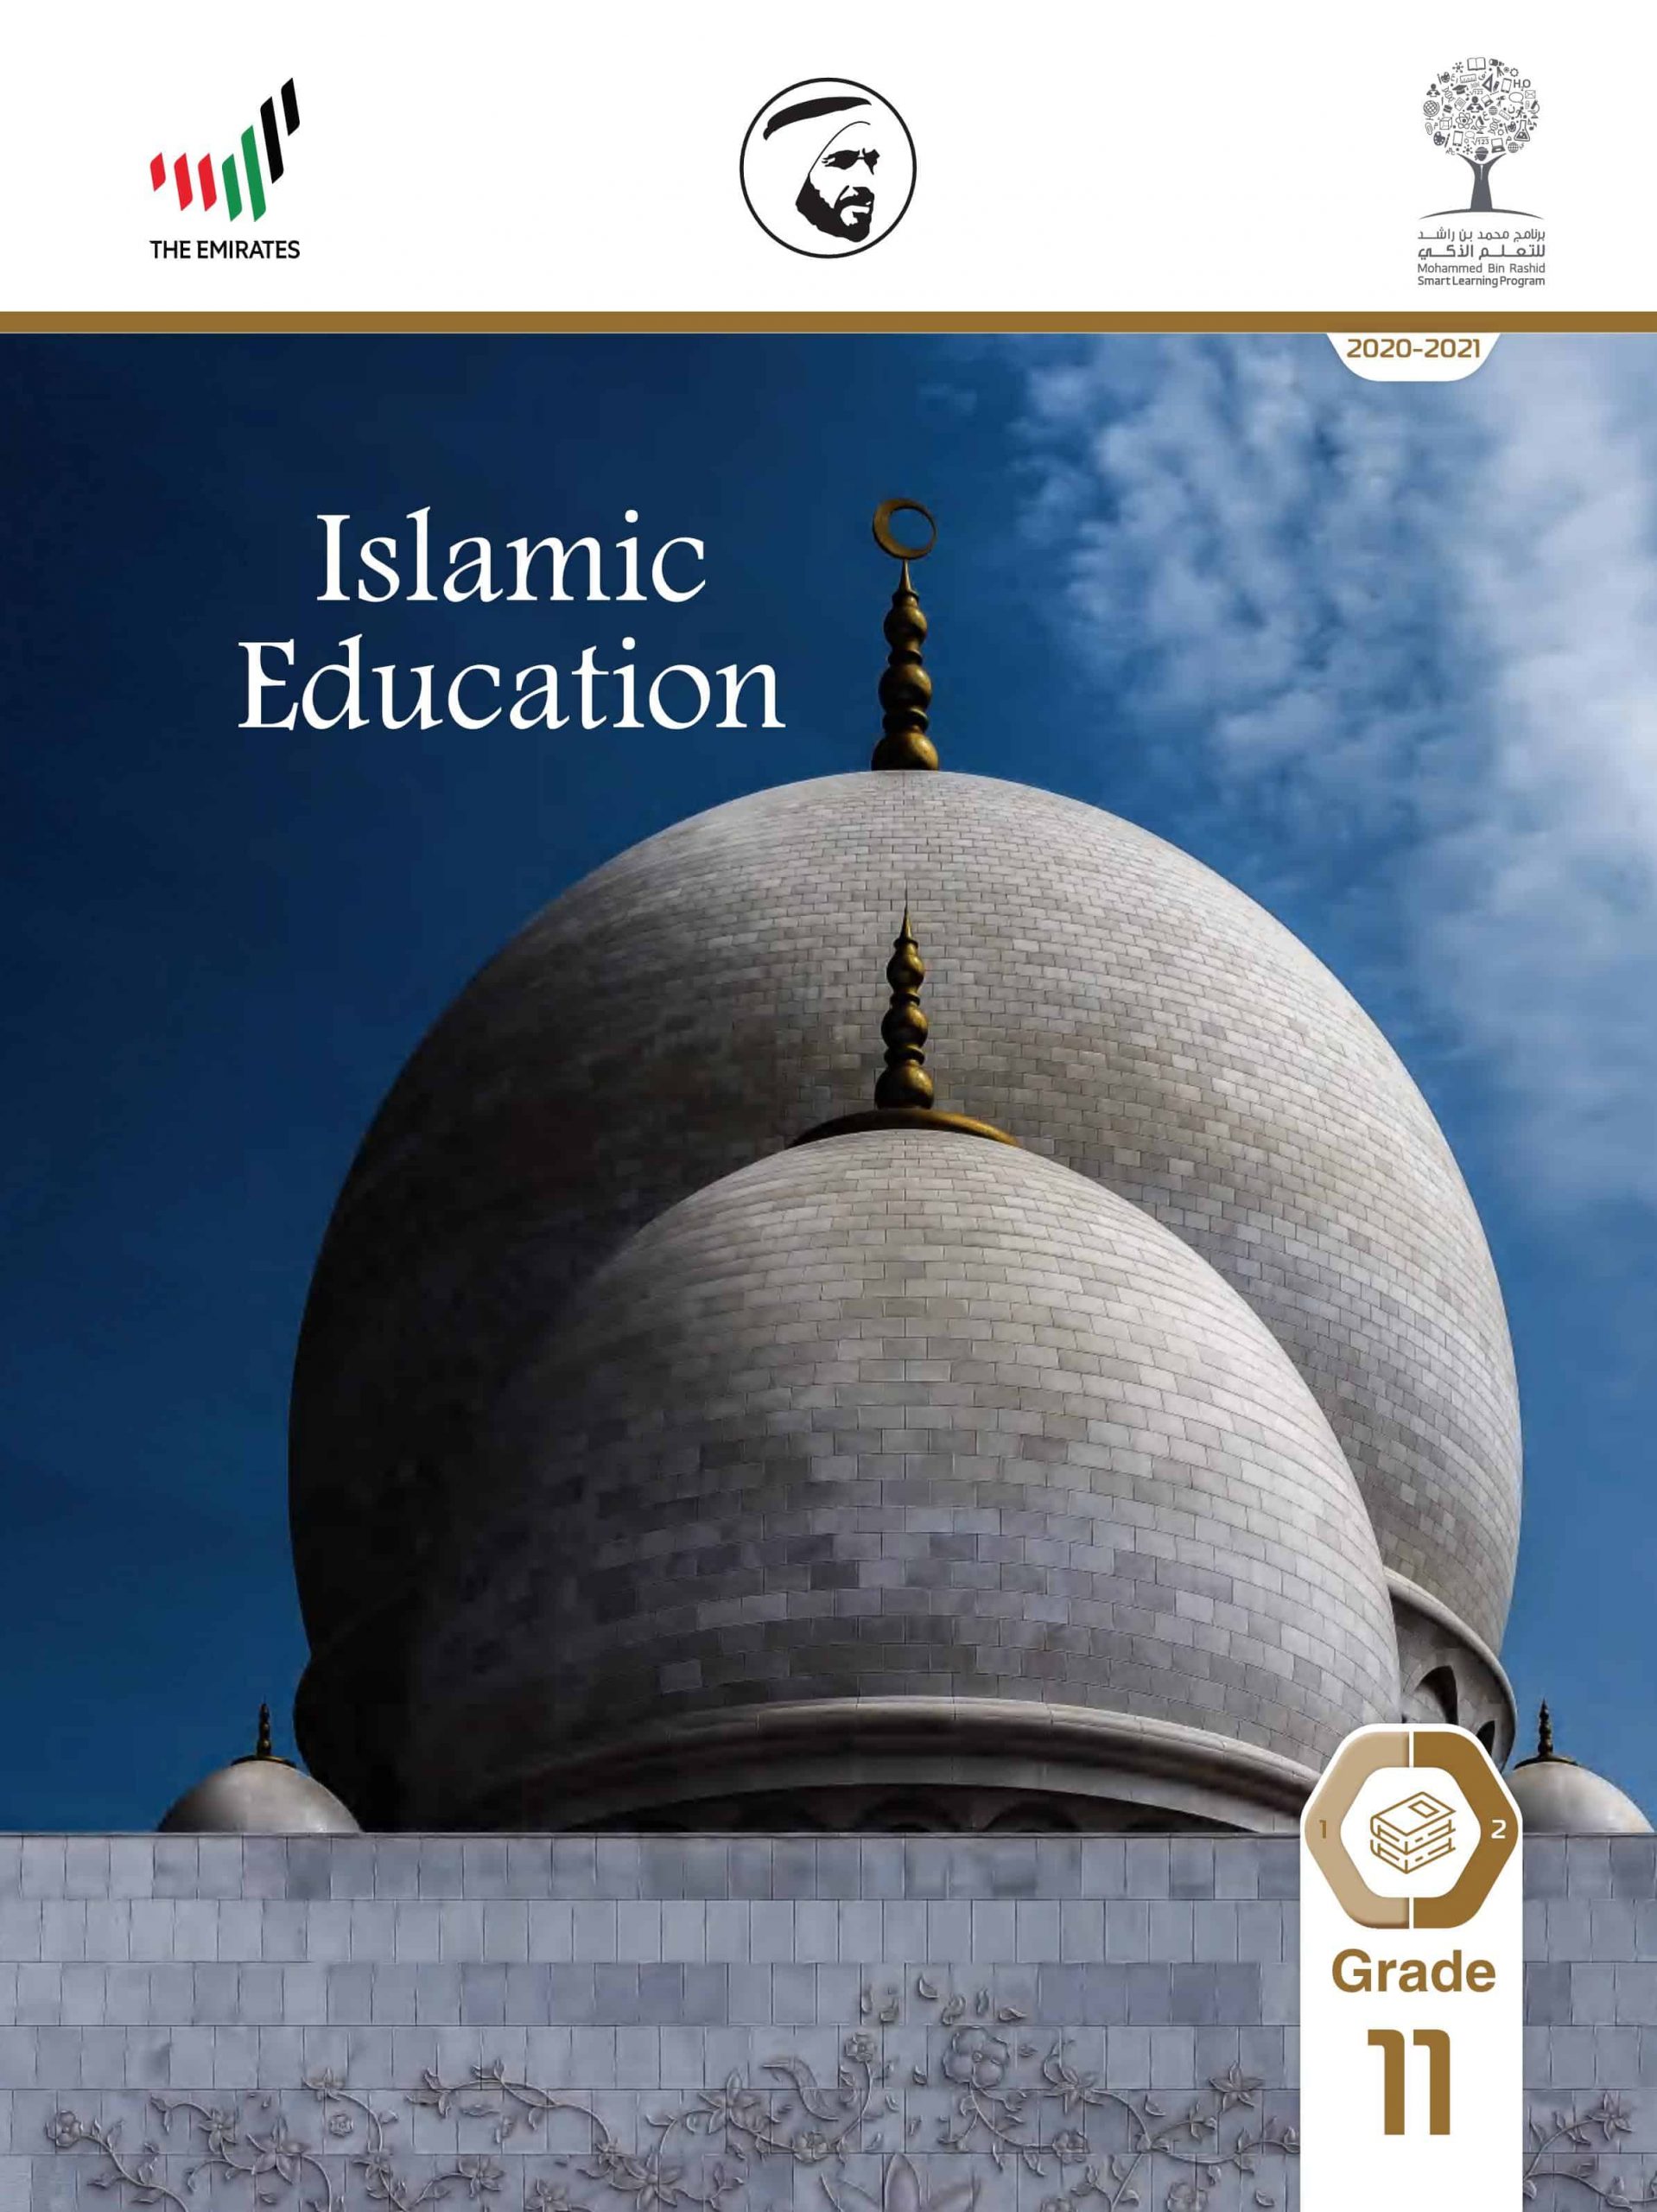 كتاب الطالب لغير الناطقين باللغة العربية الفصل الدراسي الثاني 2020-2021 الصف الحادي عشر مادة التربية الاسلامية